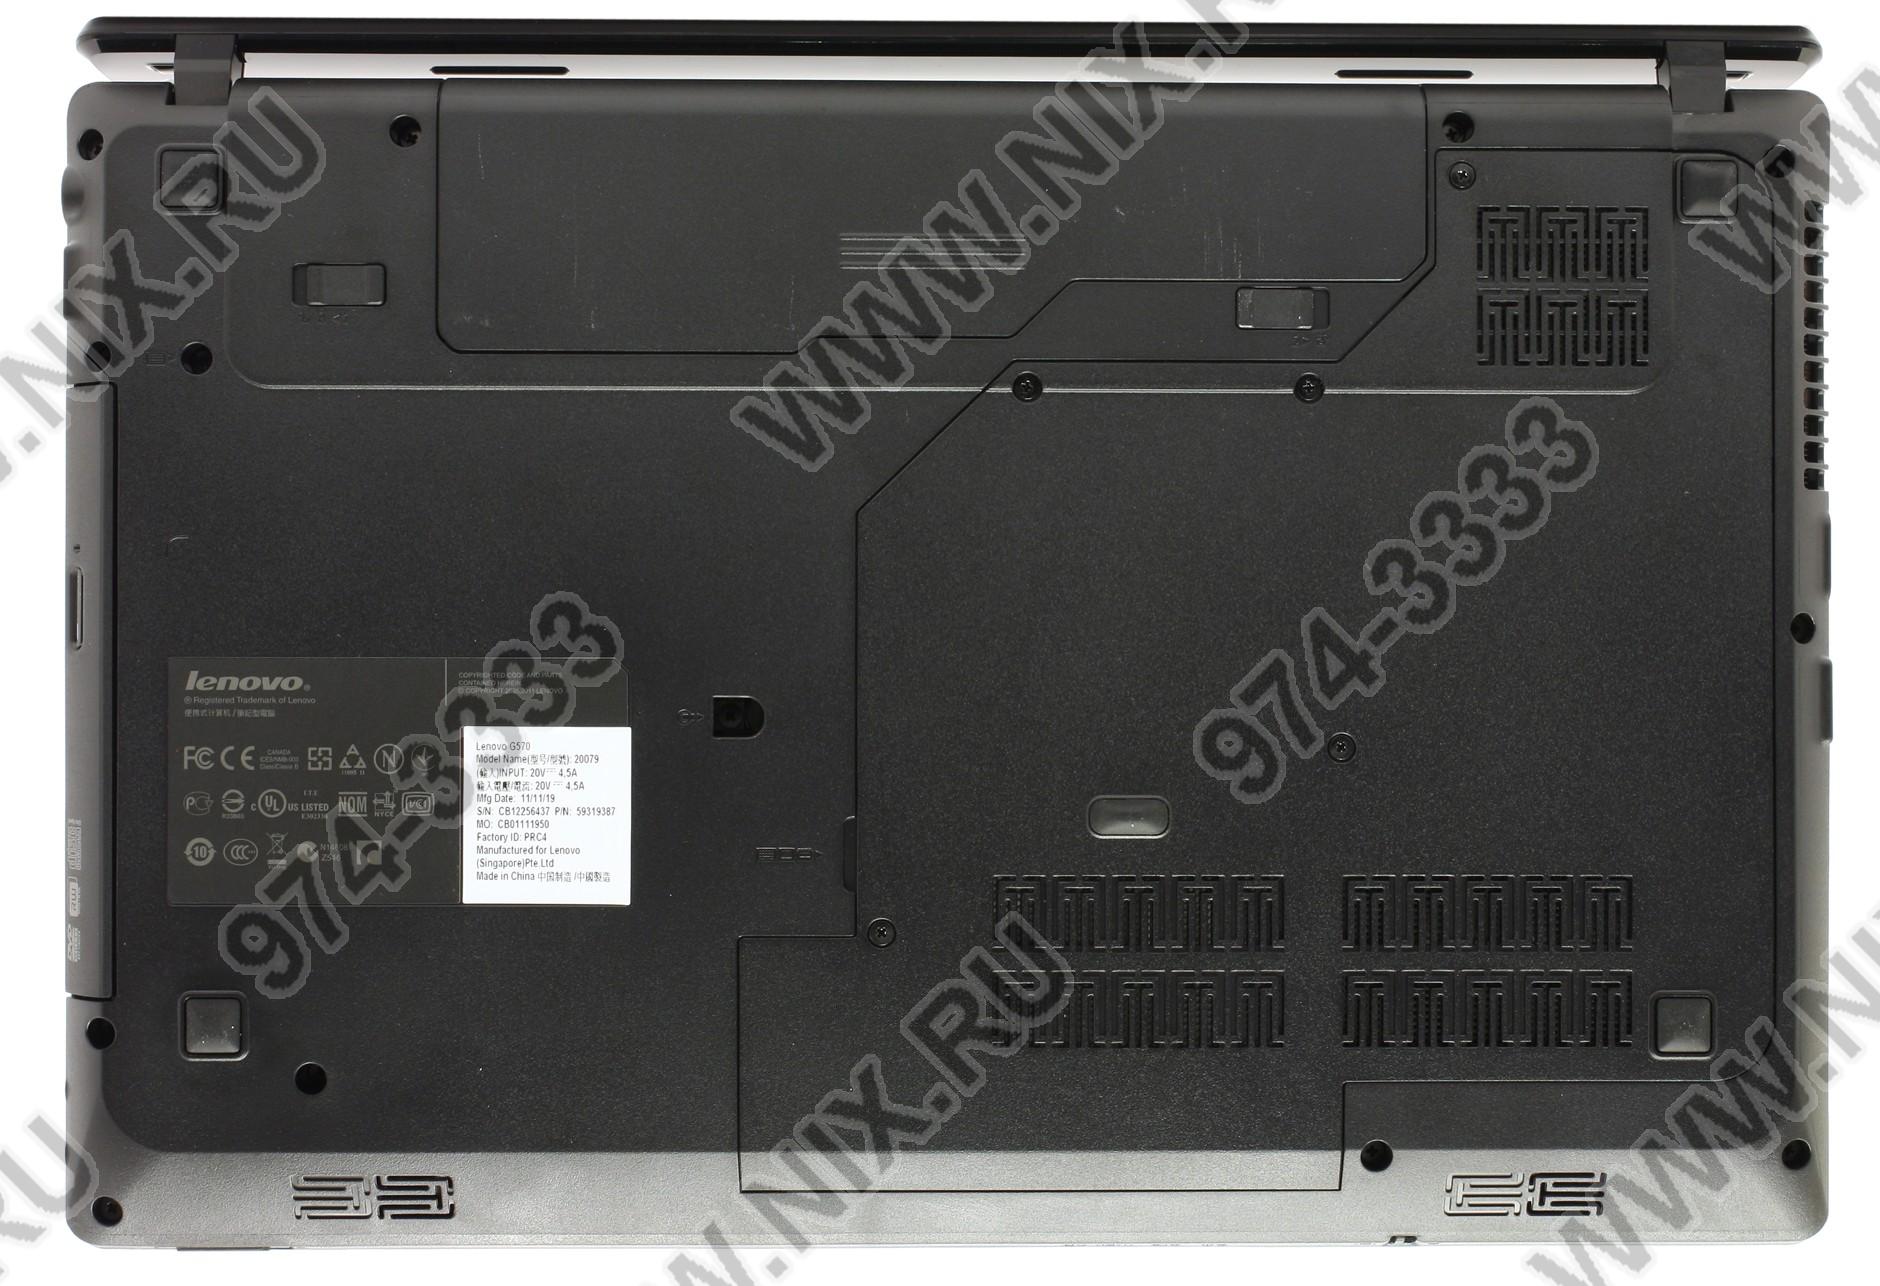 Купить Ноутбук Lenovo G570 В Минске